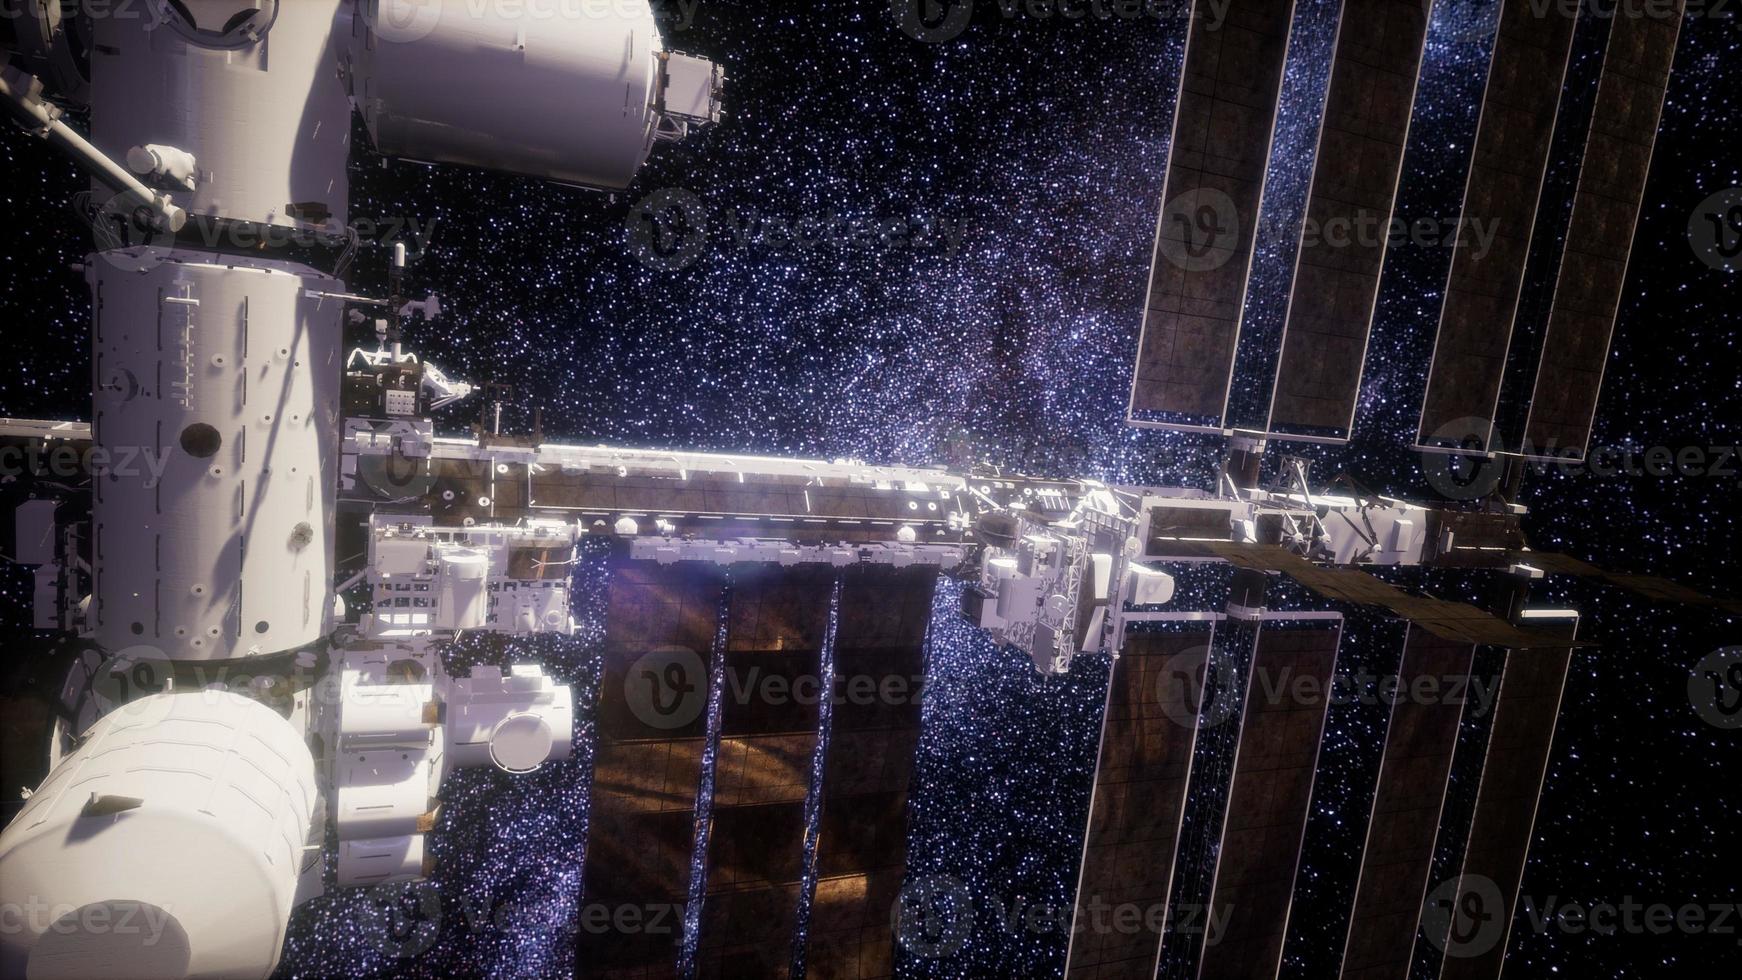 estação espacial internacional no espaço sideral foto